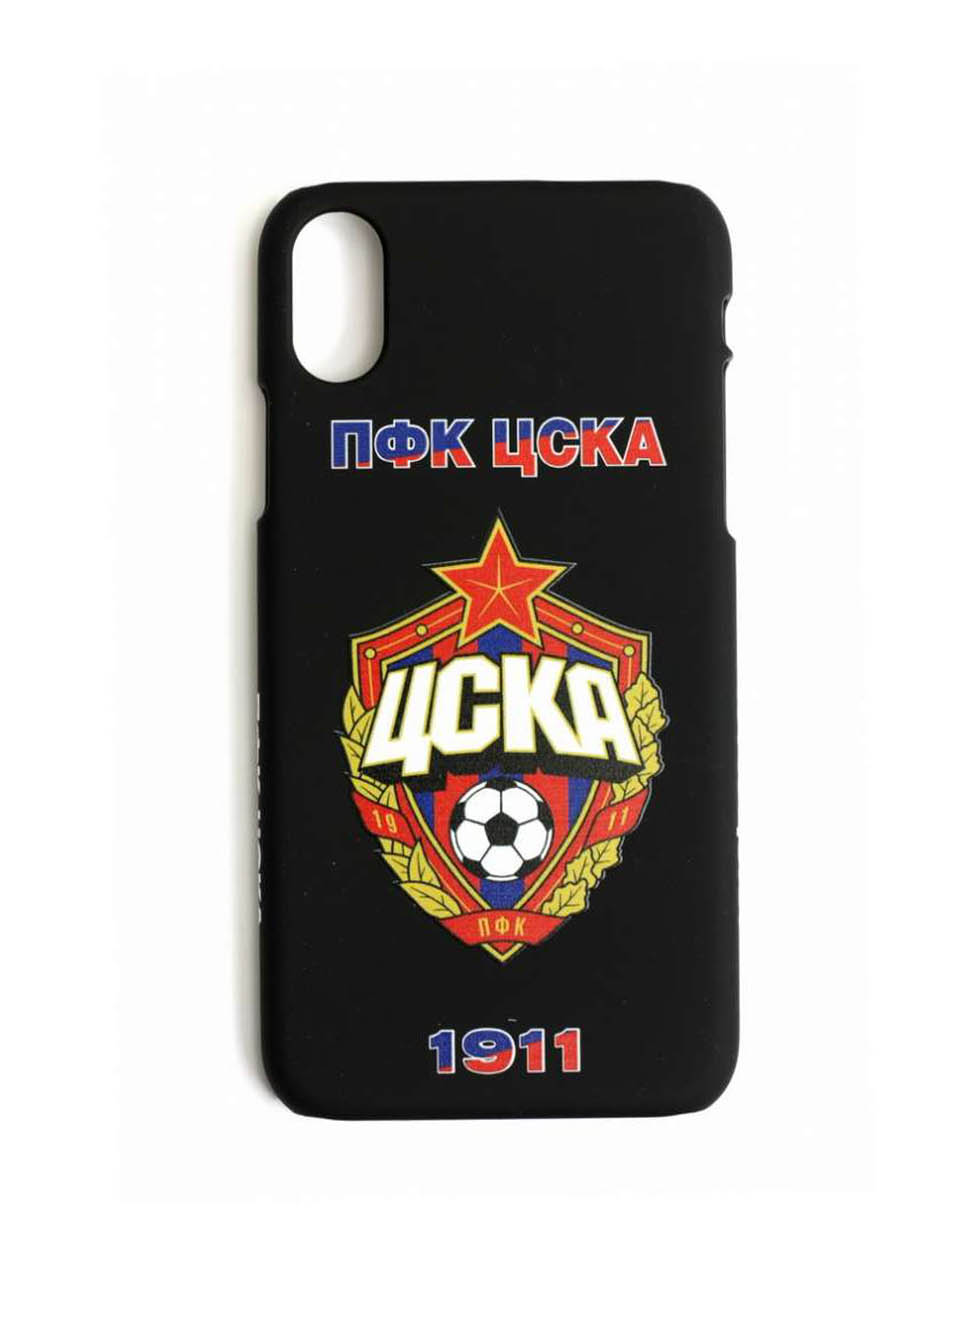 Клип-кейс ПФК ЦСКА 1911 для iPhone, цвет чёрный (IPhone 7Plus / 8Plus)